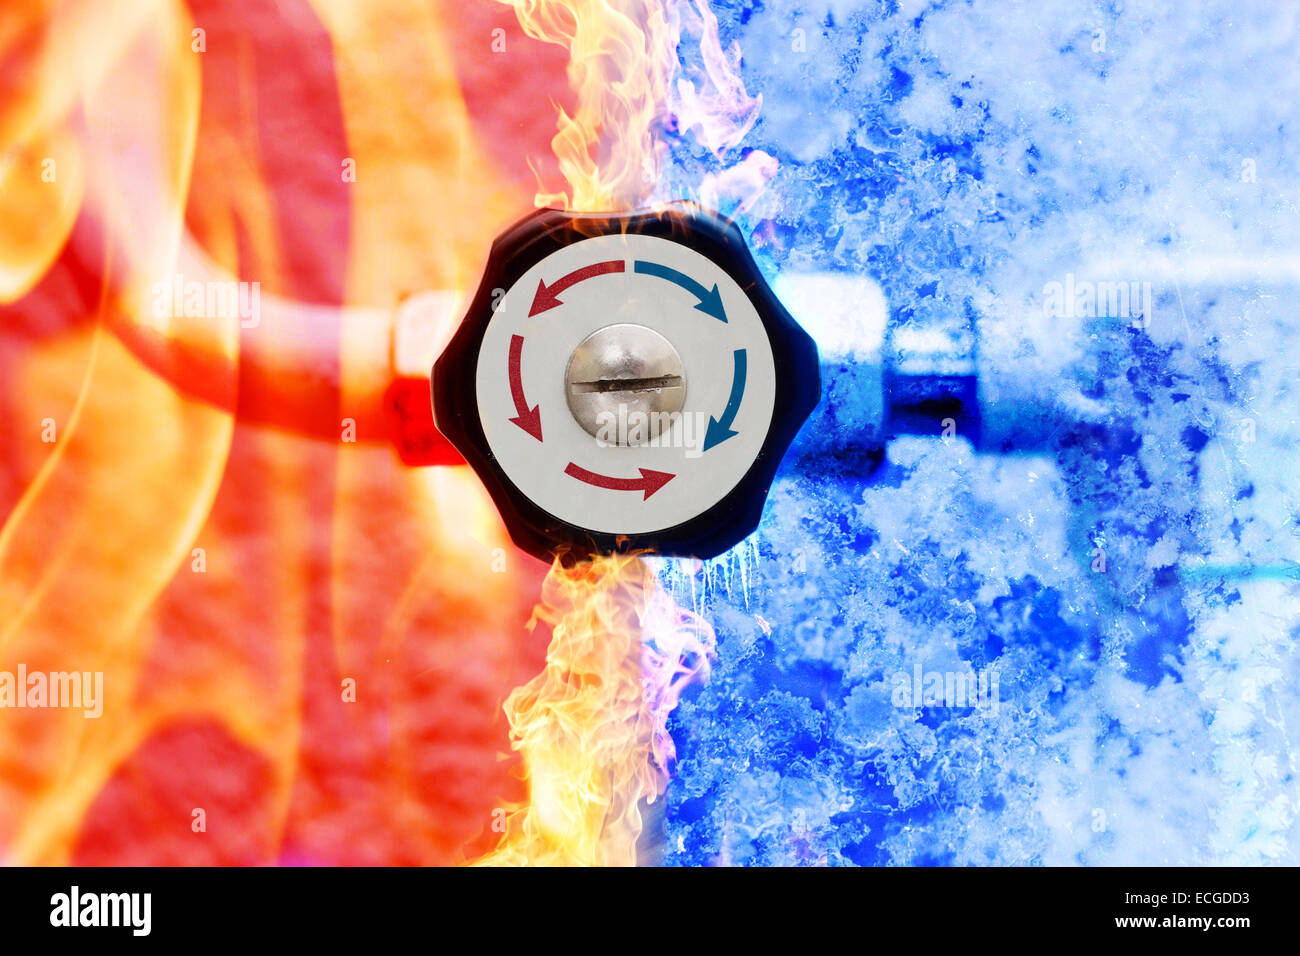 Contrôleur de chauffage manuel avec flèches rouge et bleu dans le feu et la glace arrière-plan Banque D'Images